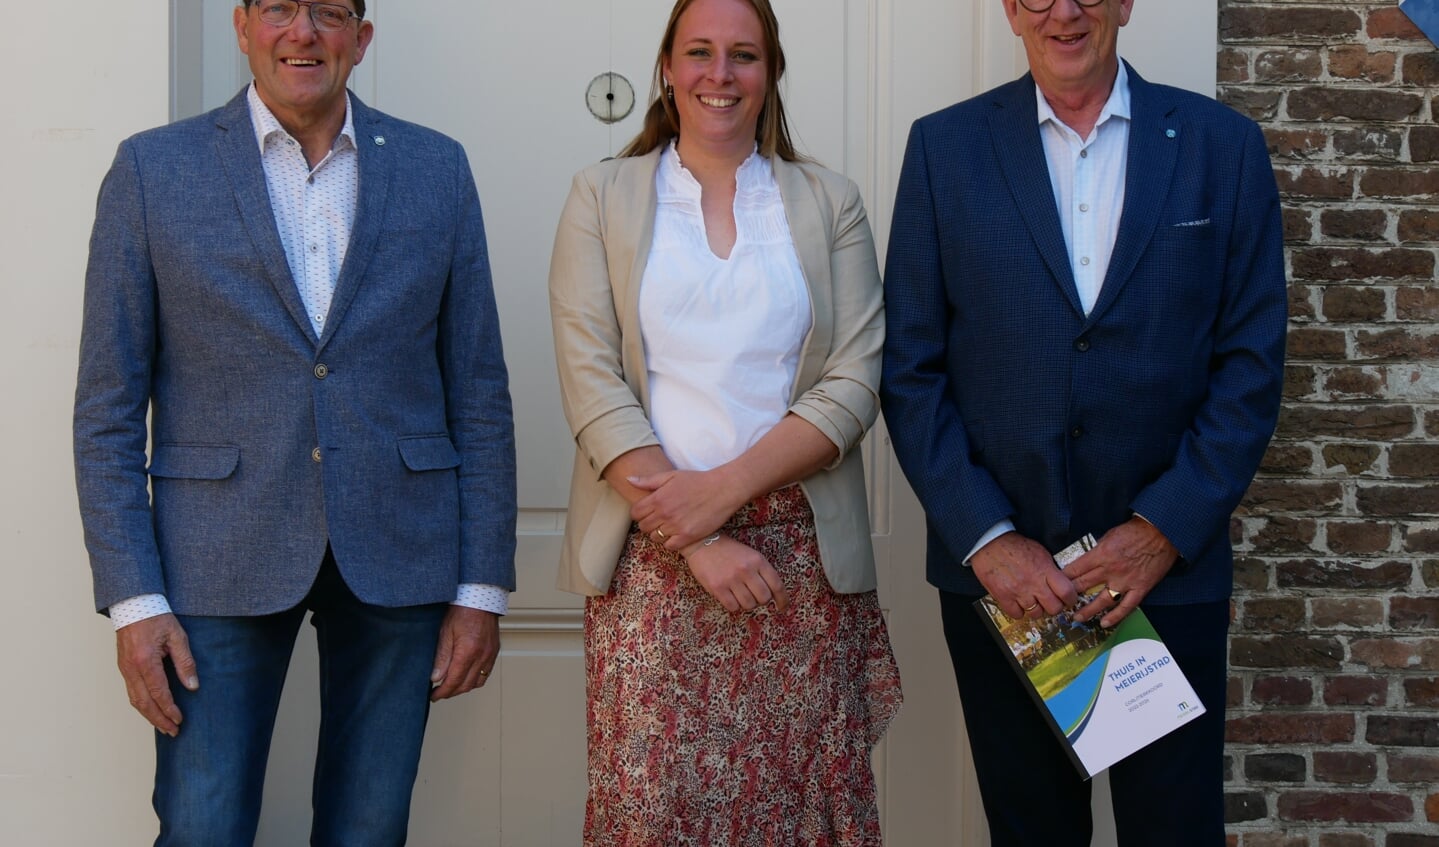 De fractievoorzitters van de partijen in het college: Rien Verhagen (CDA), Miranda Kerkhof - Ulehake (HIER) en Arie de Zwart (PvdA-GroenLinks). Wilma Wagenaars (VVD) ontbreekt in verband met werk.